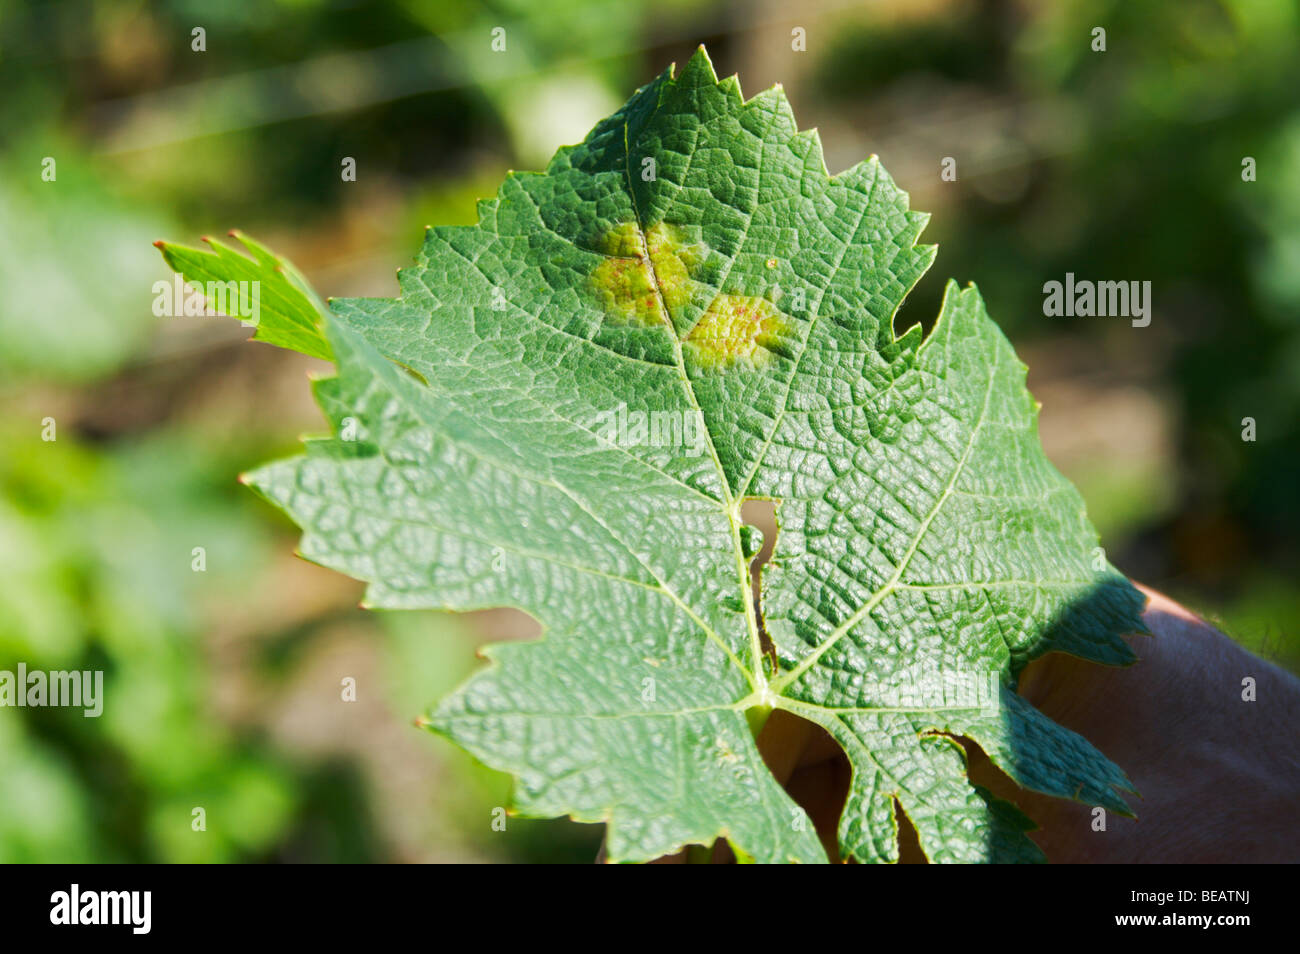 Vine leaf showing attack by downy mildew merlot chateau la tour bichot graves bordeaux france Stock Photo